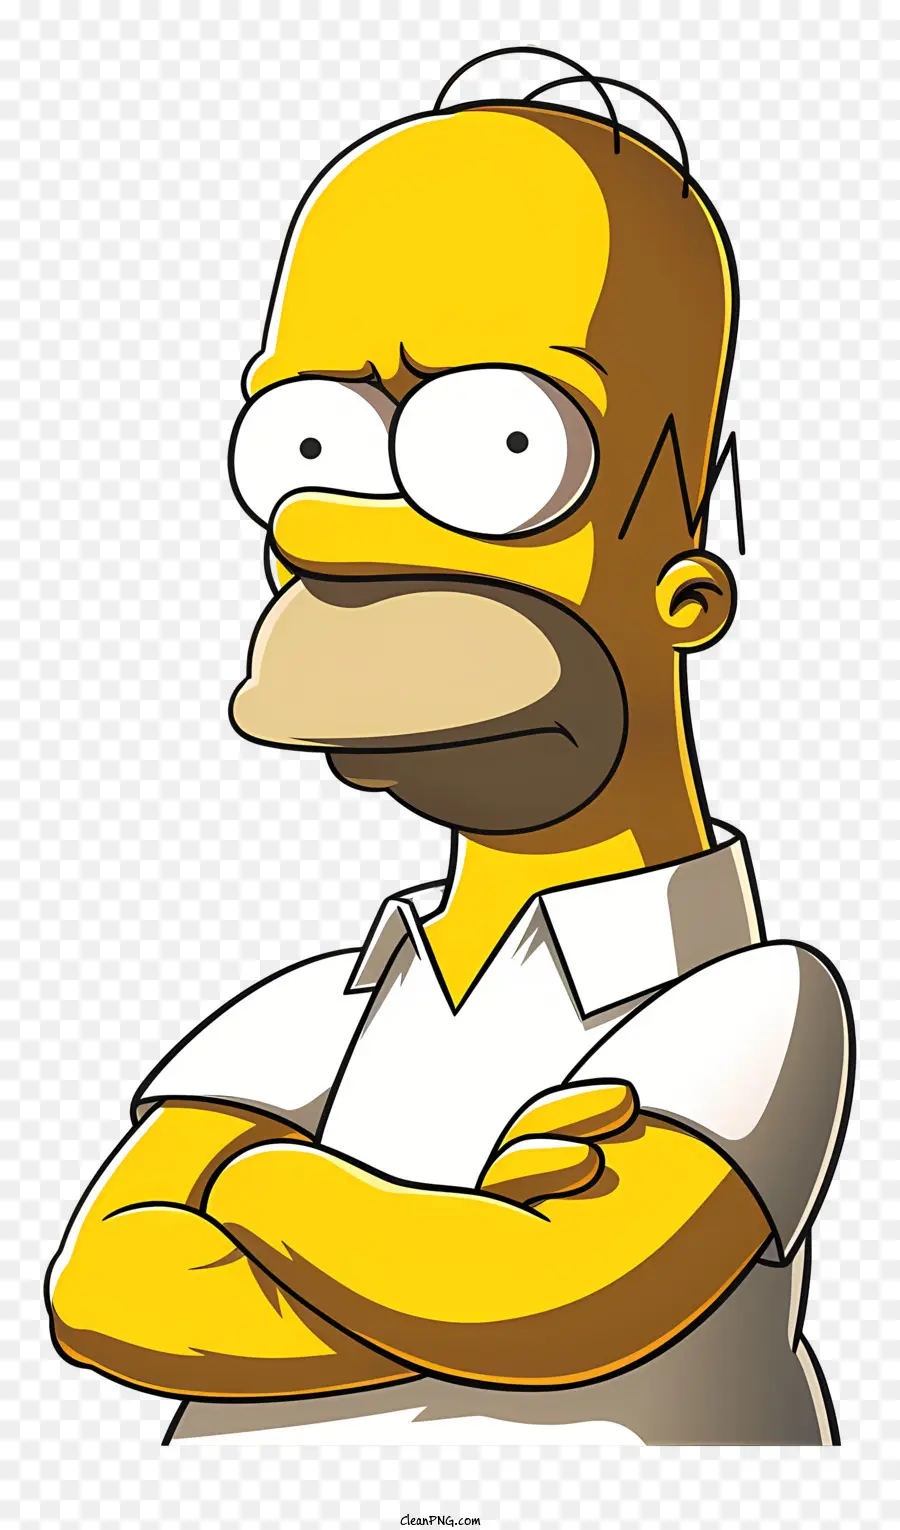 Simpsons the Simpsons nhân vật biểu hiện nghiêm túc khoanh tay - Nhân vật hoạt hình nghiêm túc từ 